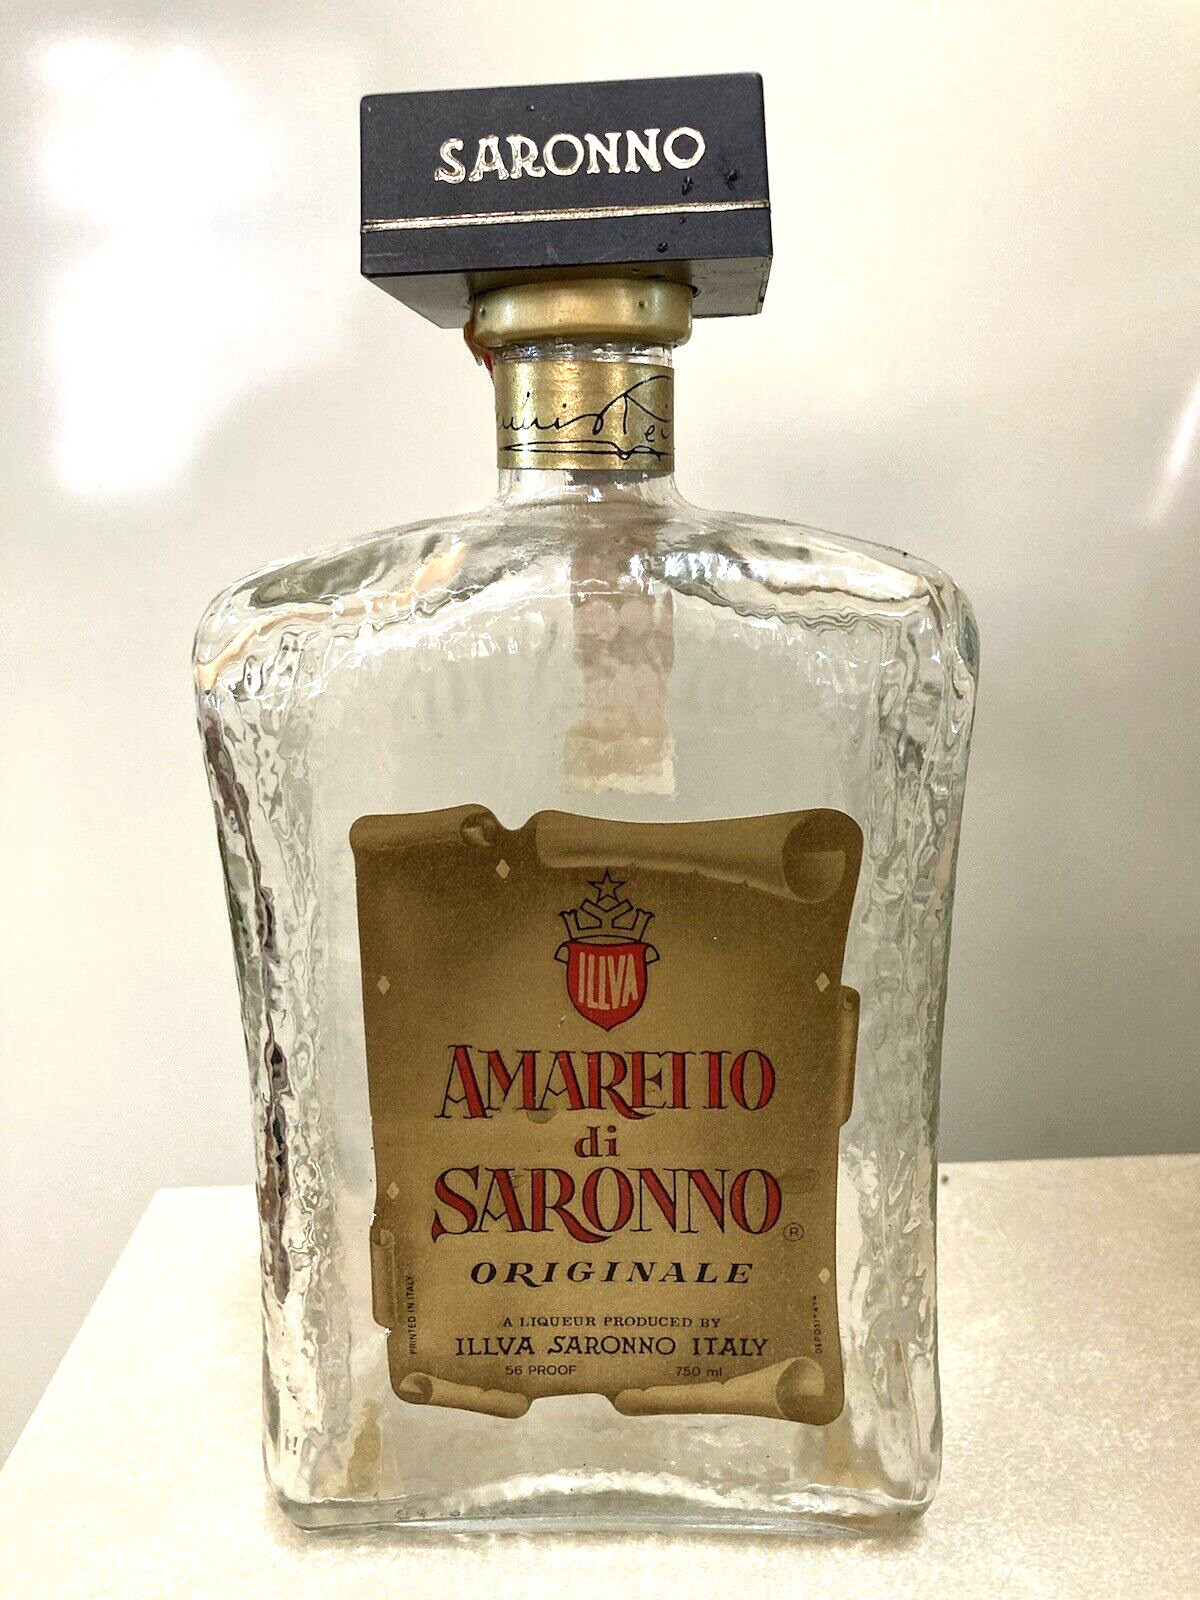 Amaretto di Saronno Originale Imported Italian Liquor 23/32 Qt. Bottle Vintage